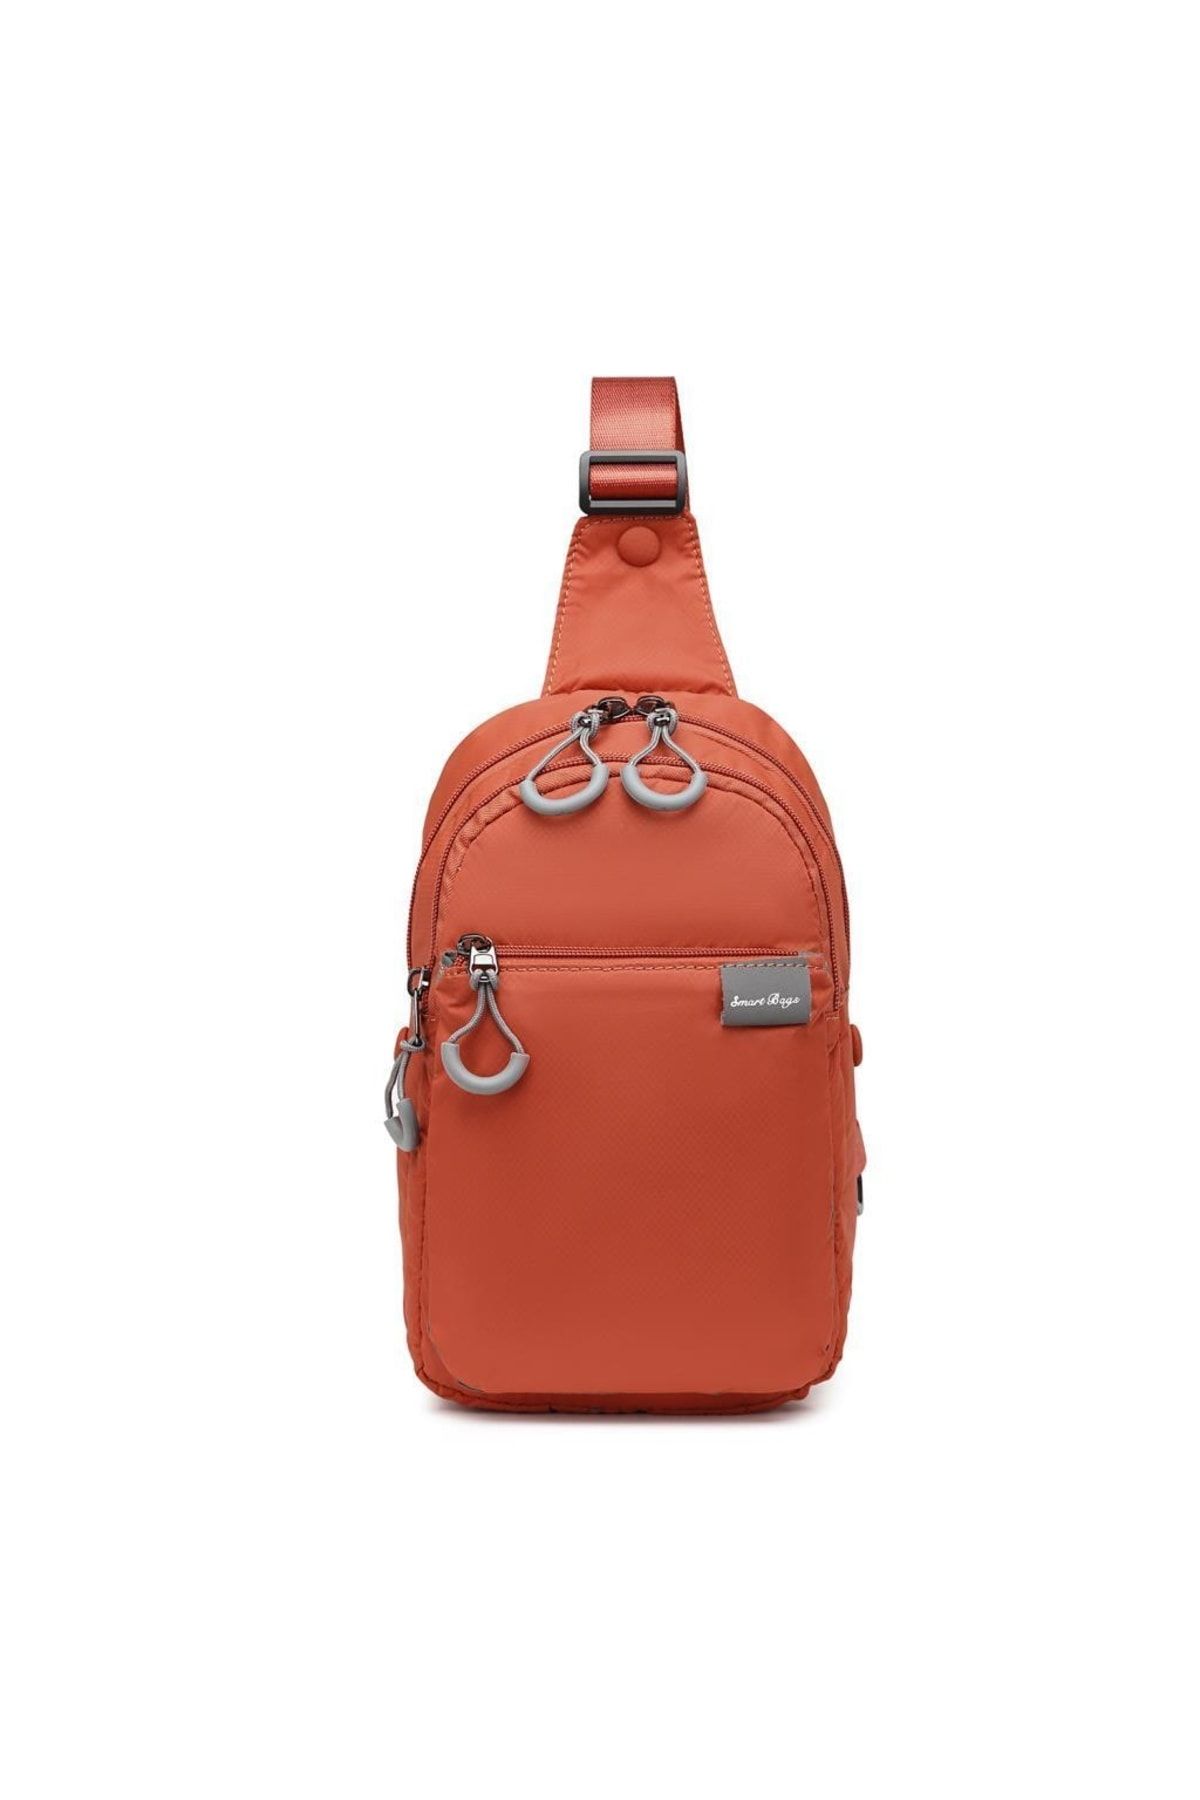 Smart Bags Ekstra Hafif Uniseks Bodybag Omuz Çantası 3145